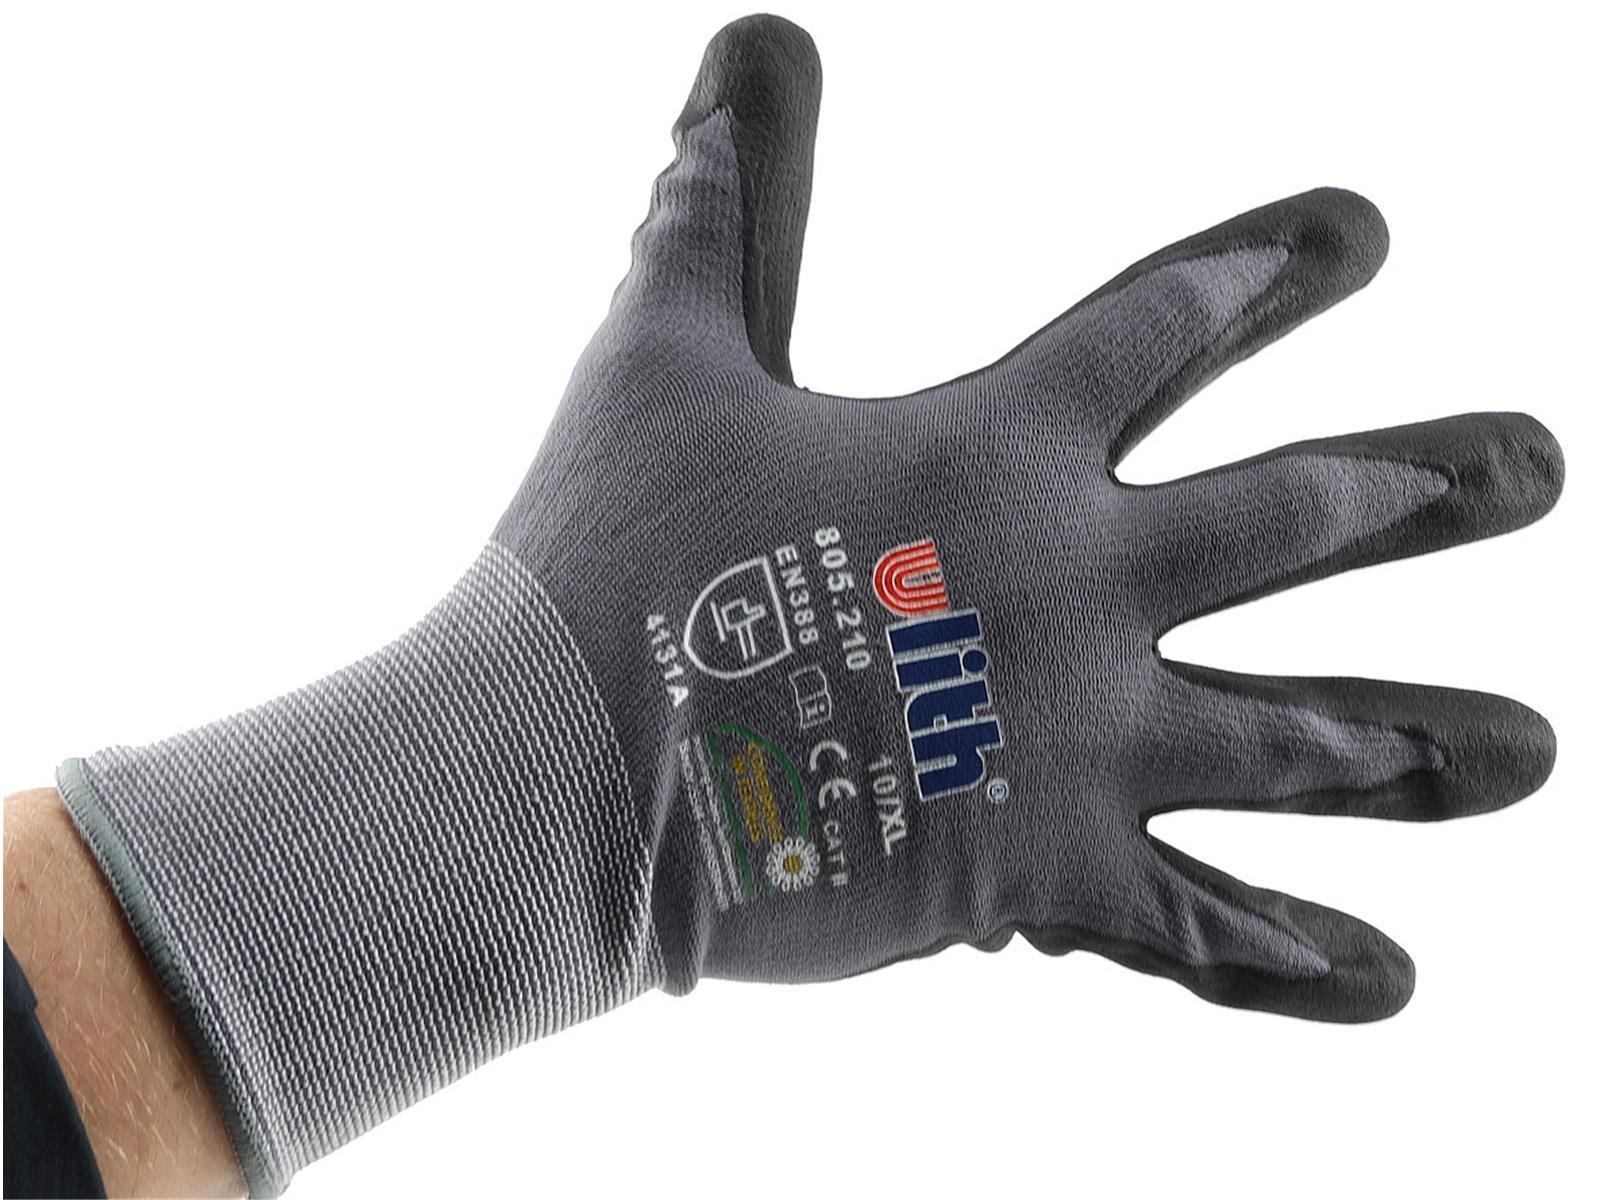 Profi Arbeits-Handschuhe mit Kautschuk-Beschichtung, Ökotex 100, Größe 11